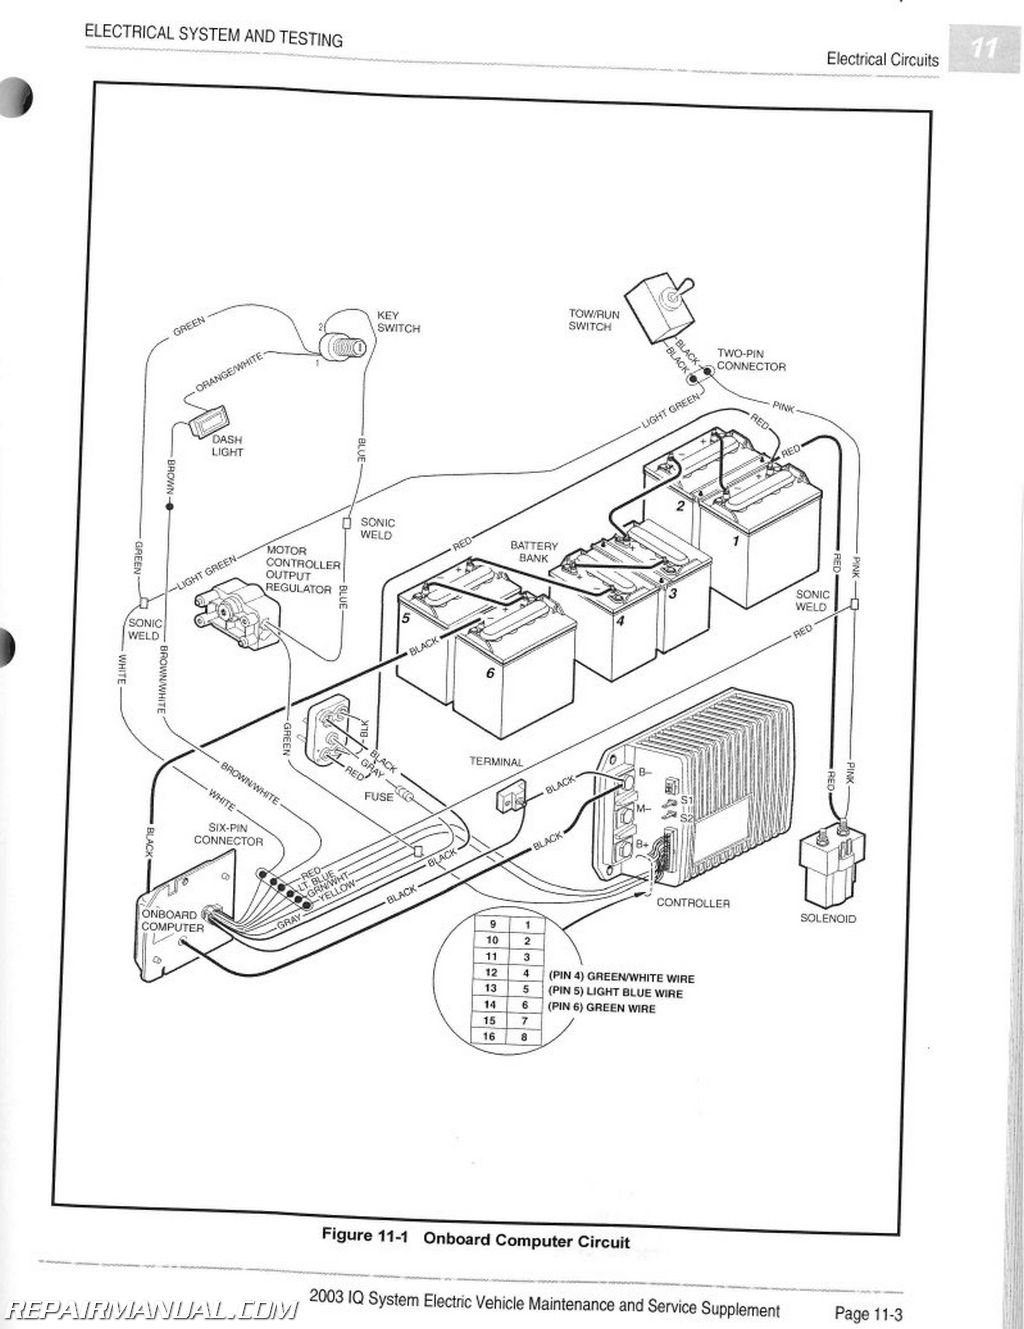 Wiring Diagram: 27 Club Car Ds Wiring Diagram